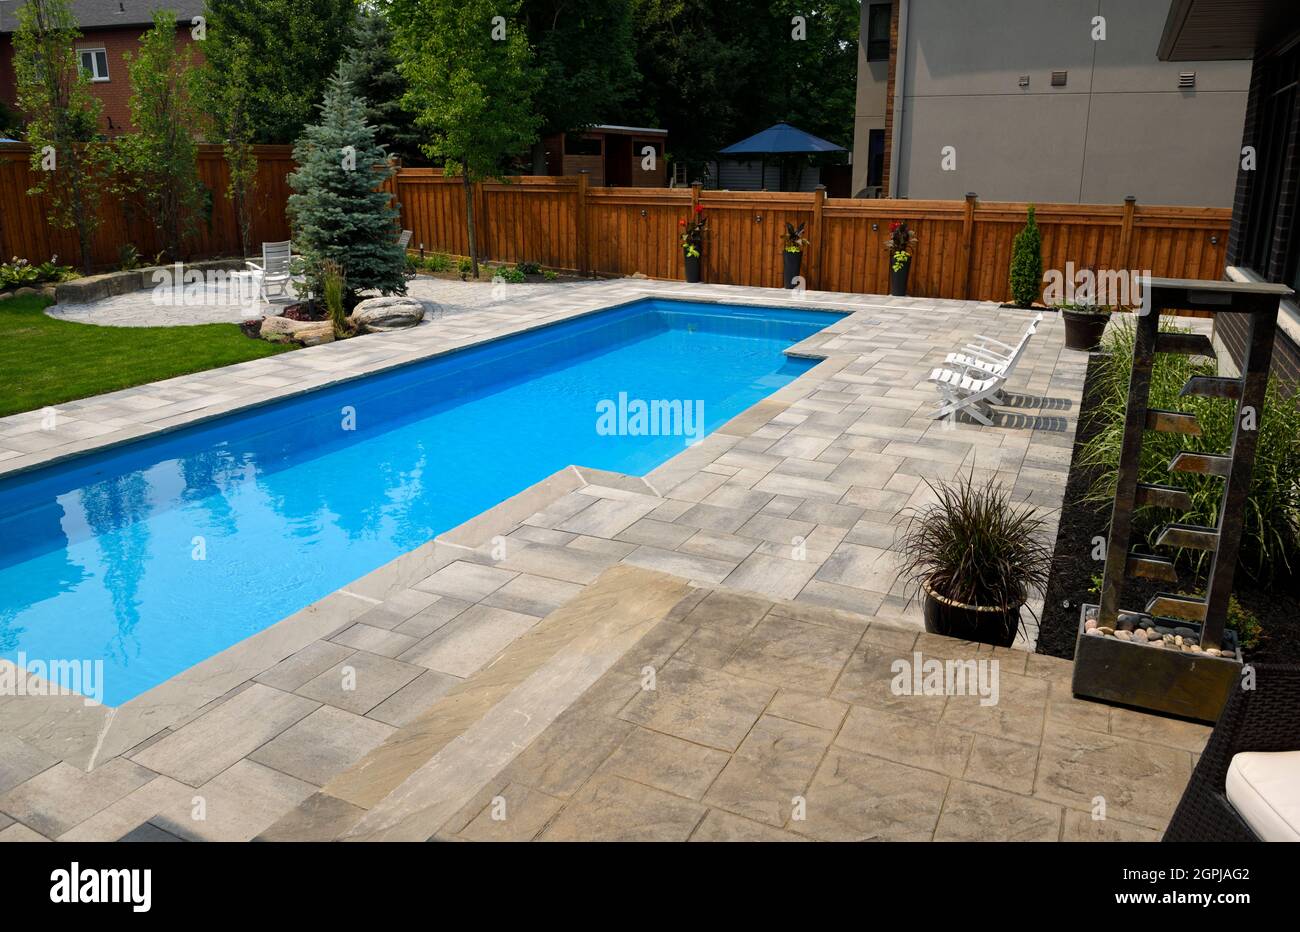 Jardines completos alrededor de una nueva piscina olímpica en el patio trasero con patios con extendedoras y césped Barrie Ontario Canada Foto de stock